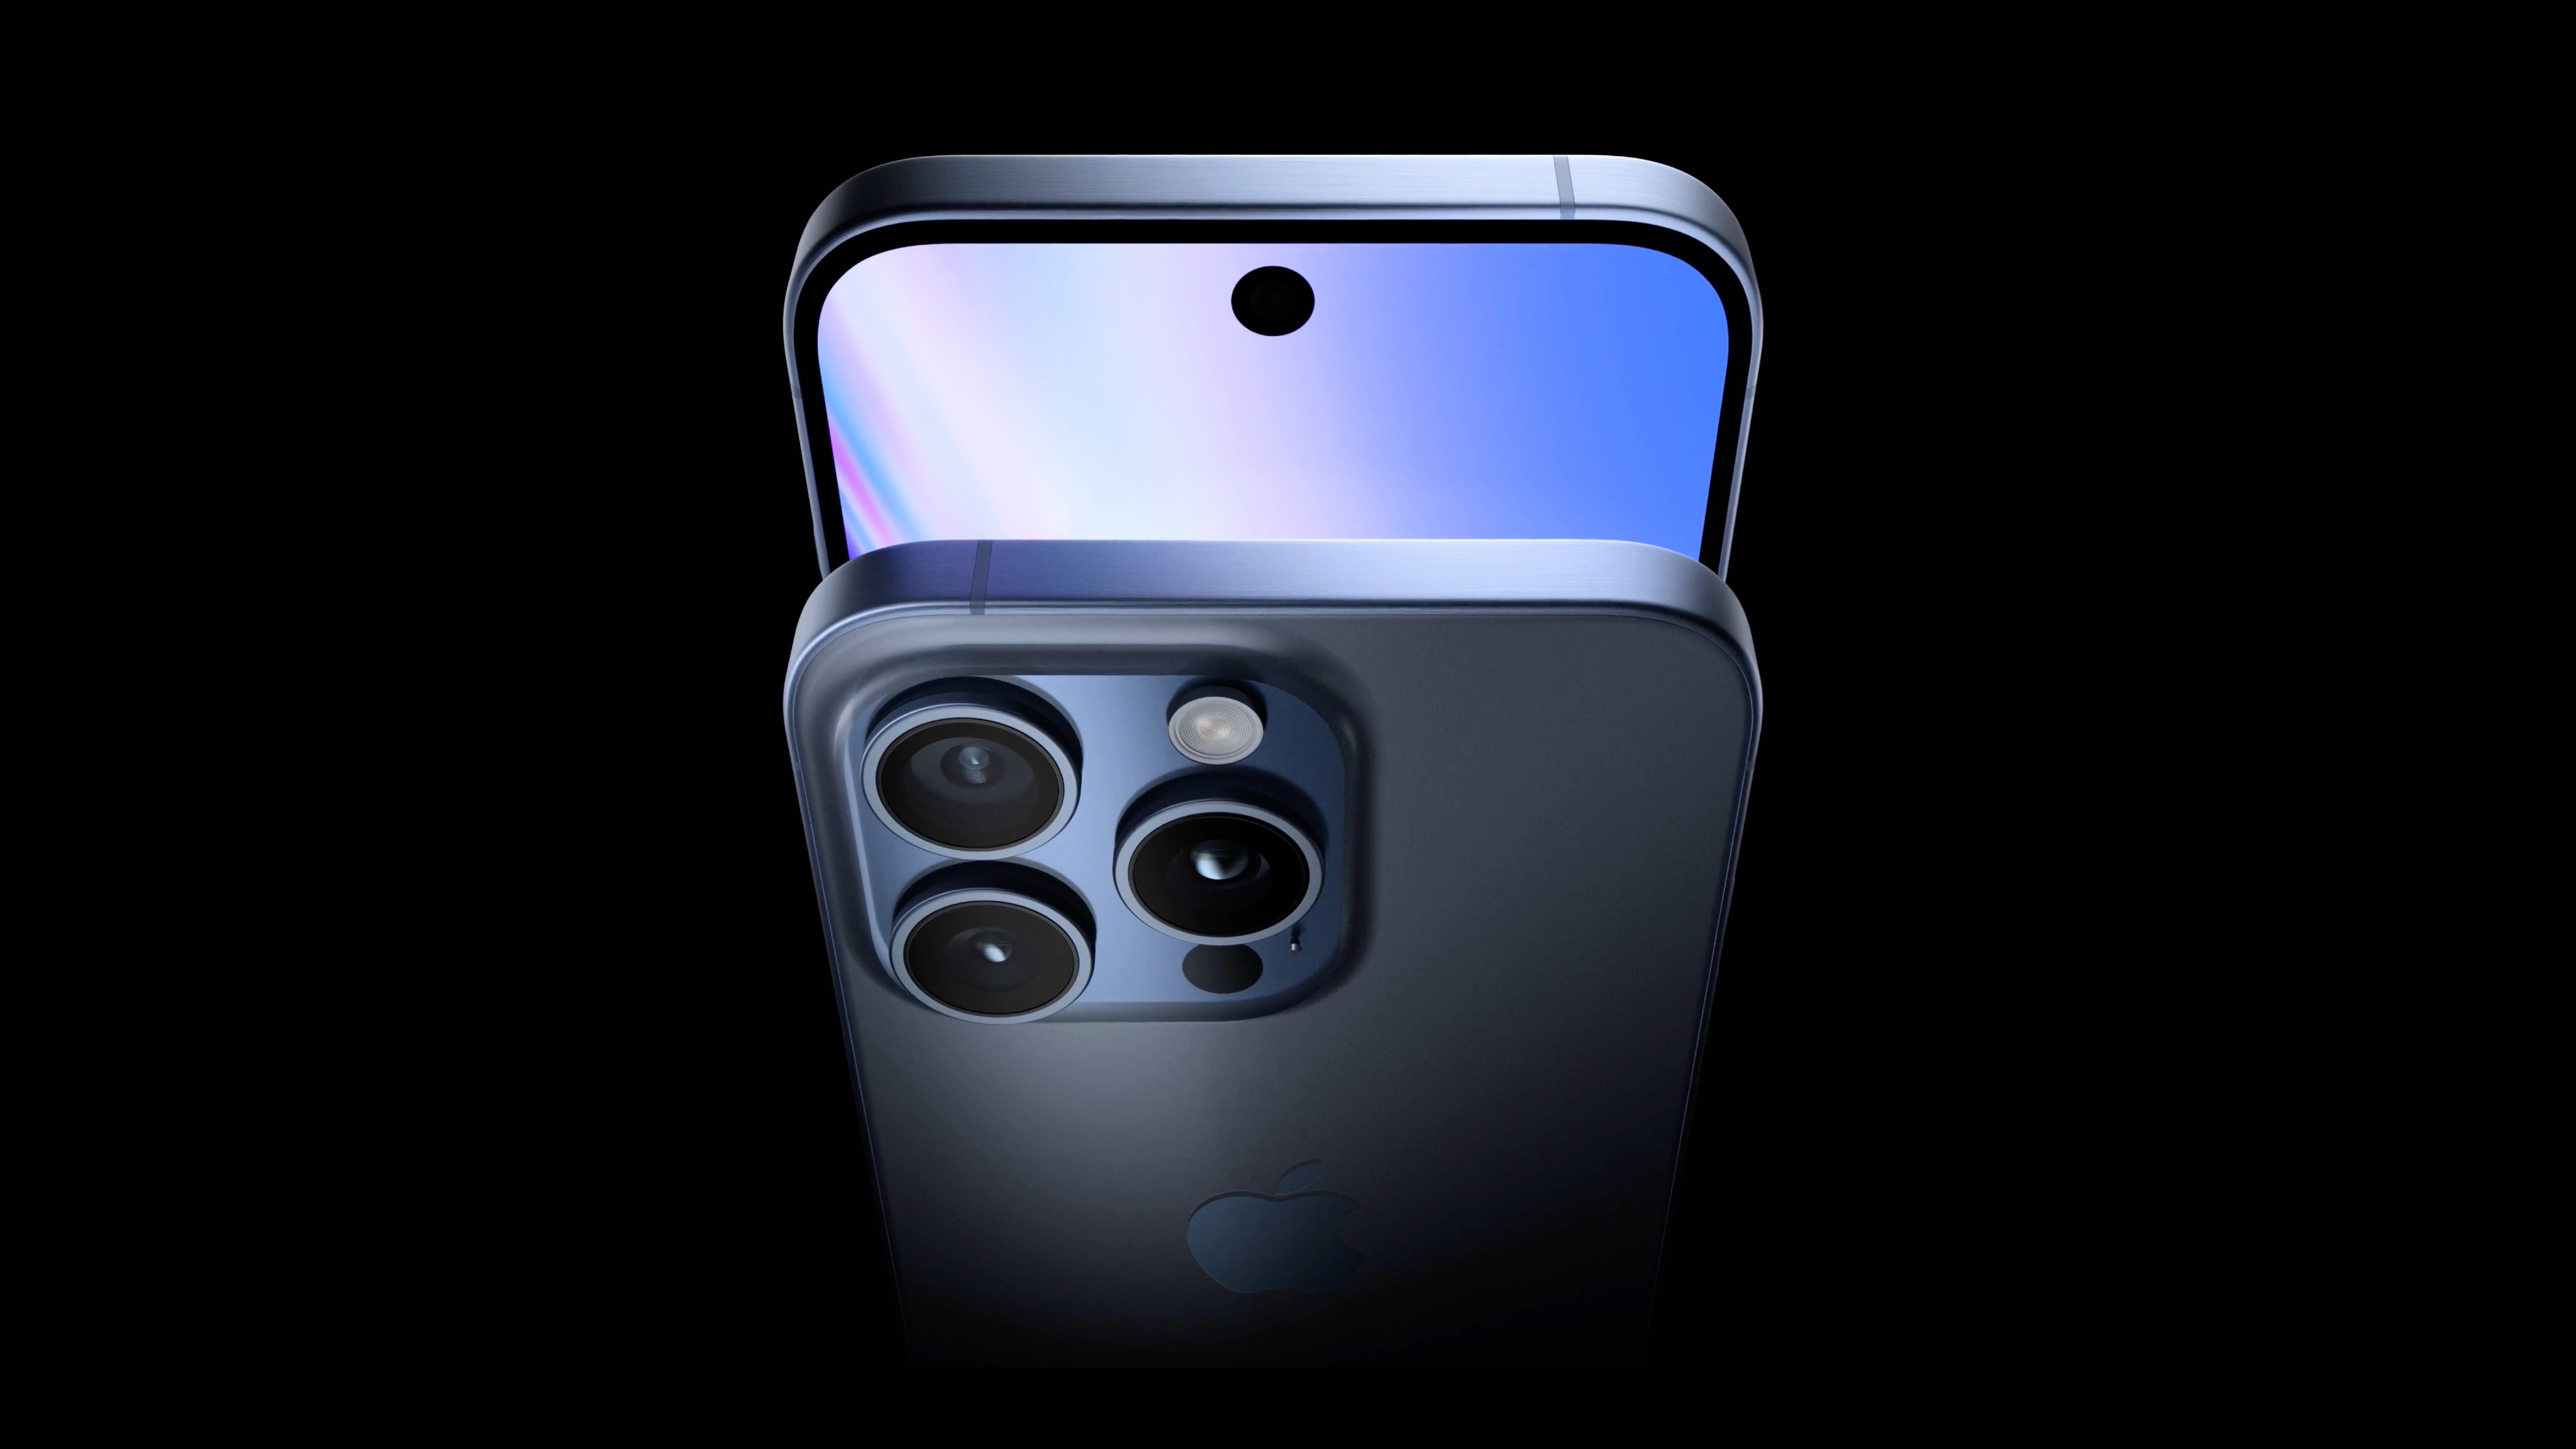 Île dynamique réduite, écrans plus grands et bouton pour l'enregistrement vidéo : l'iPhone 16 Pro et l'iPhone 16 Pro Mach ont fait leur apparition dans des rendus de haute qualité.